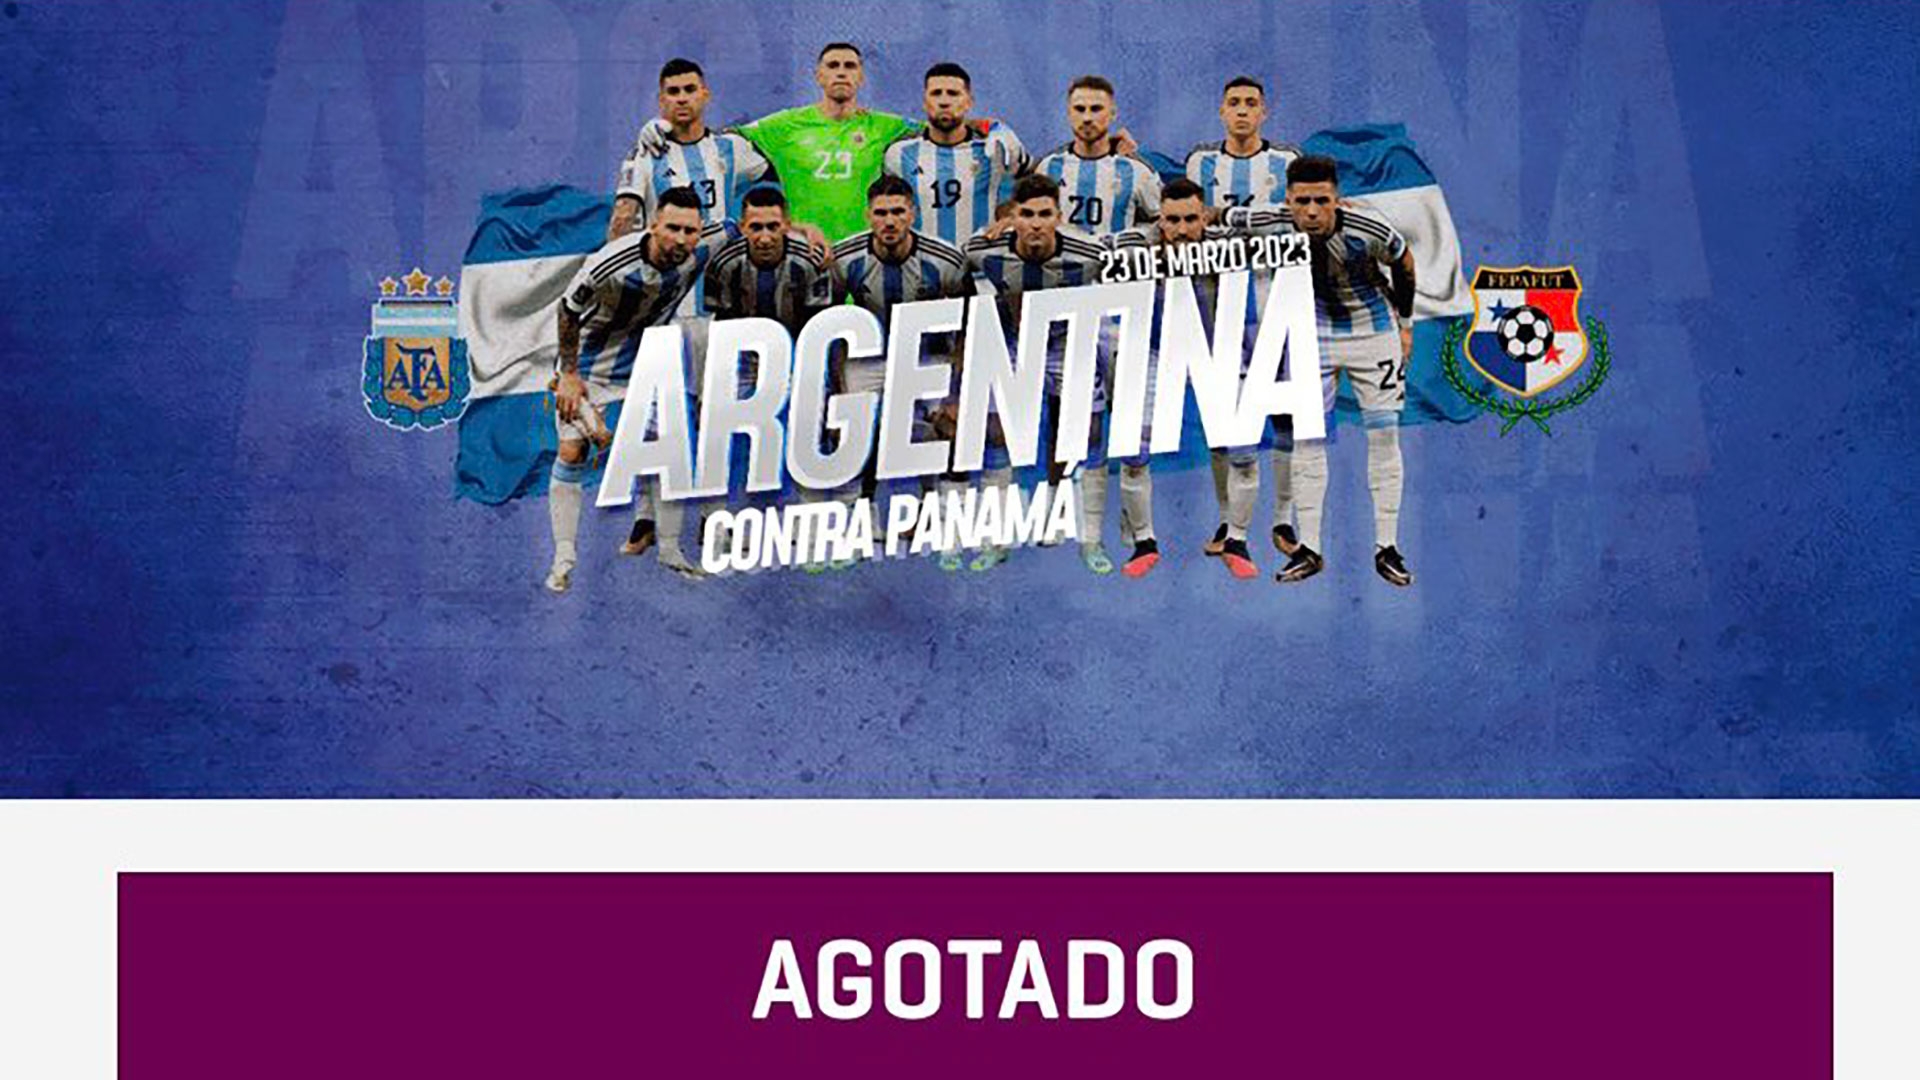 Se agotaron las entradas para el amistoso entre Argentina y Panamá: cerca de dos millones de usuarios intentaron conseguir un ticket